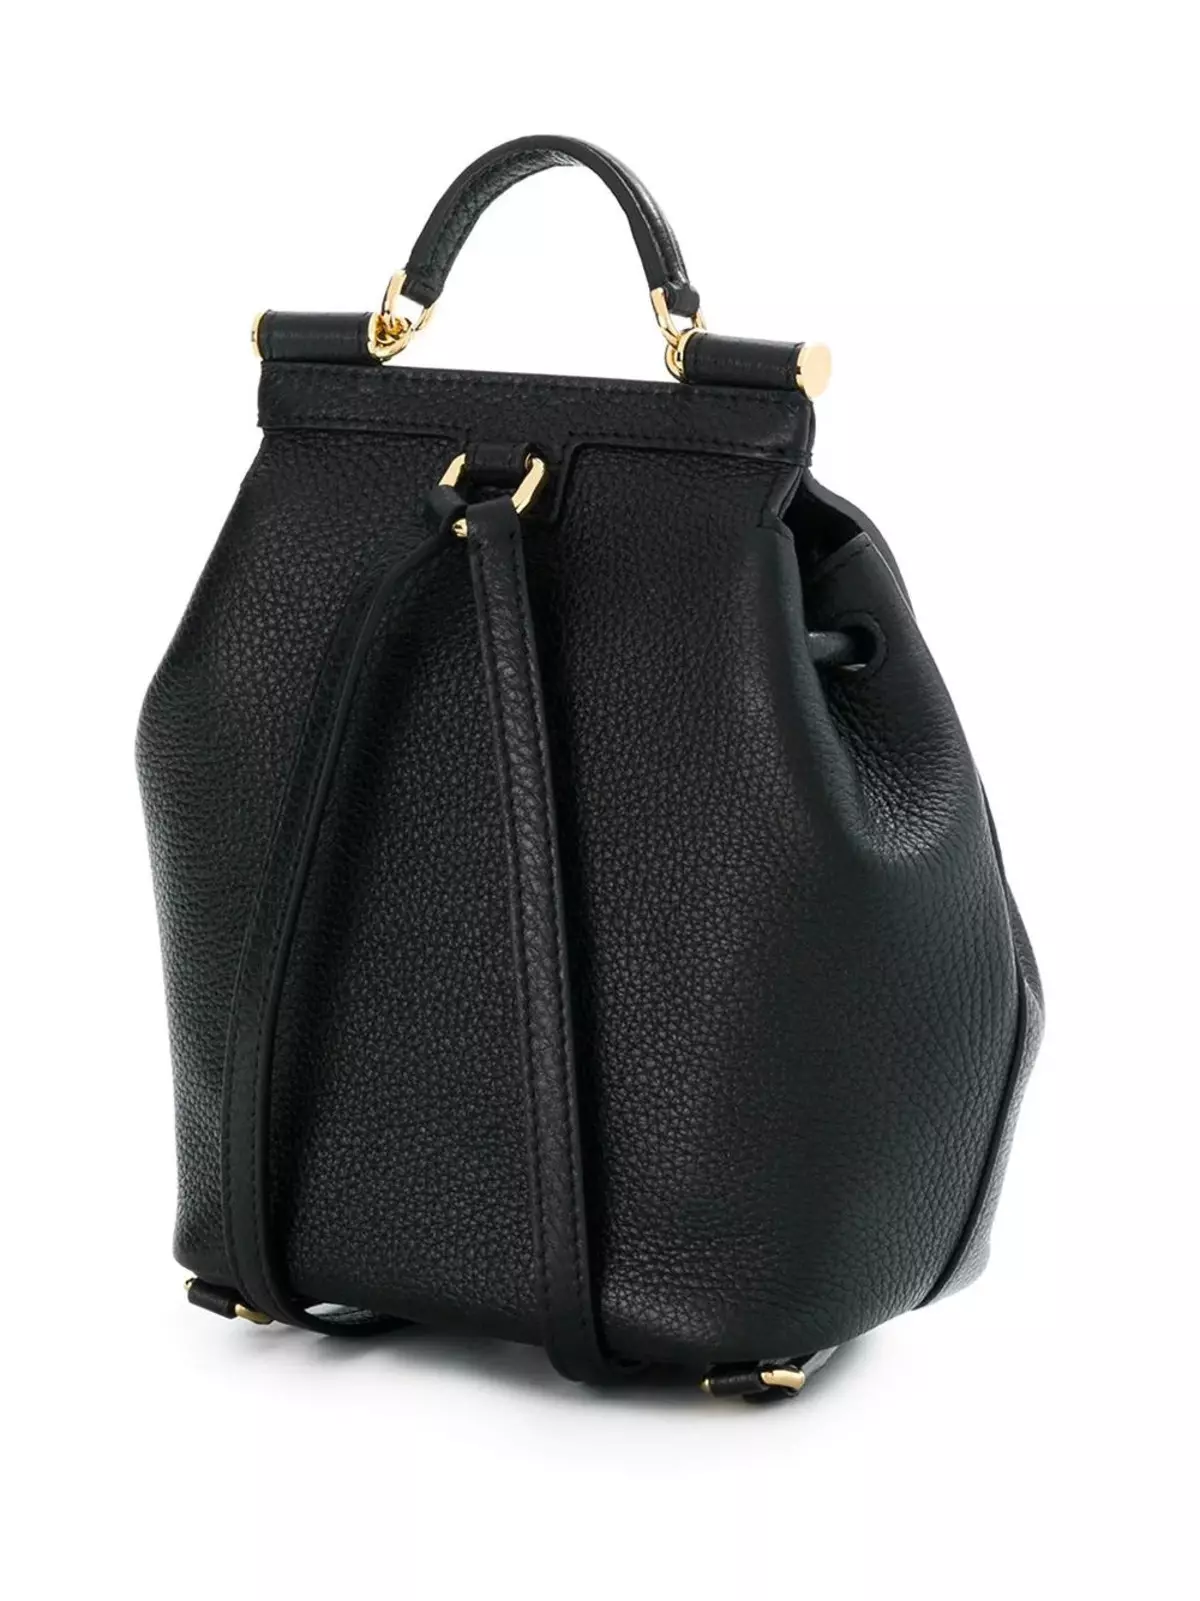 Dolce & Gabbana Plecaki: Kobiece i męskie, czarne i czerwone, skórzane plecaki torby i inne modele. Jak odróżnić oryginał z kopii? 2559_19